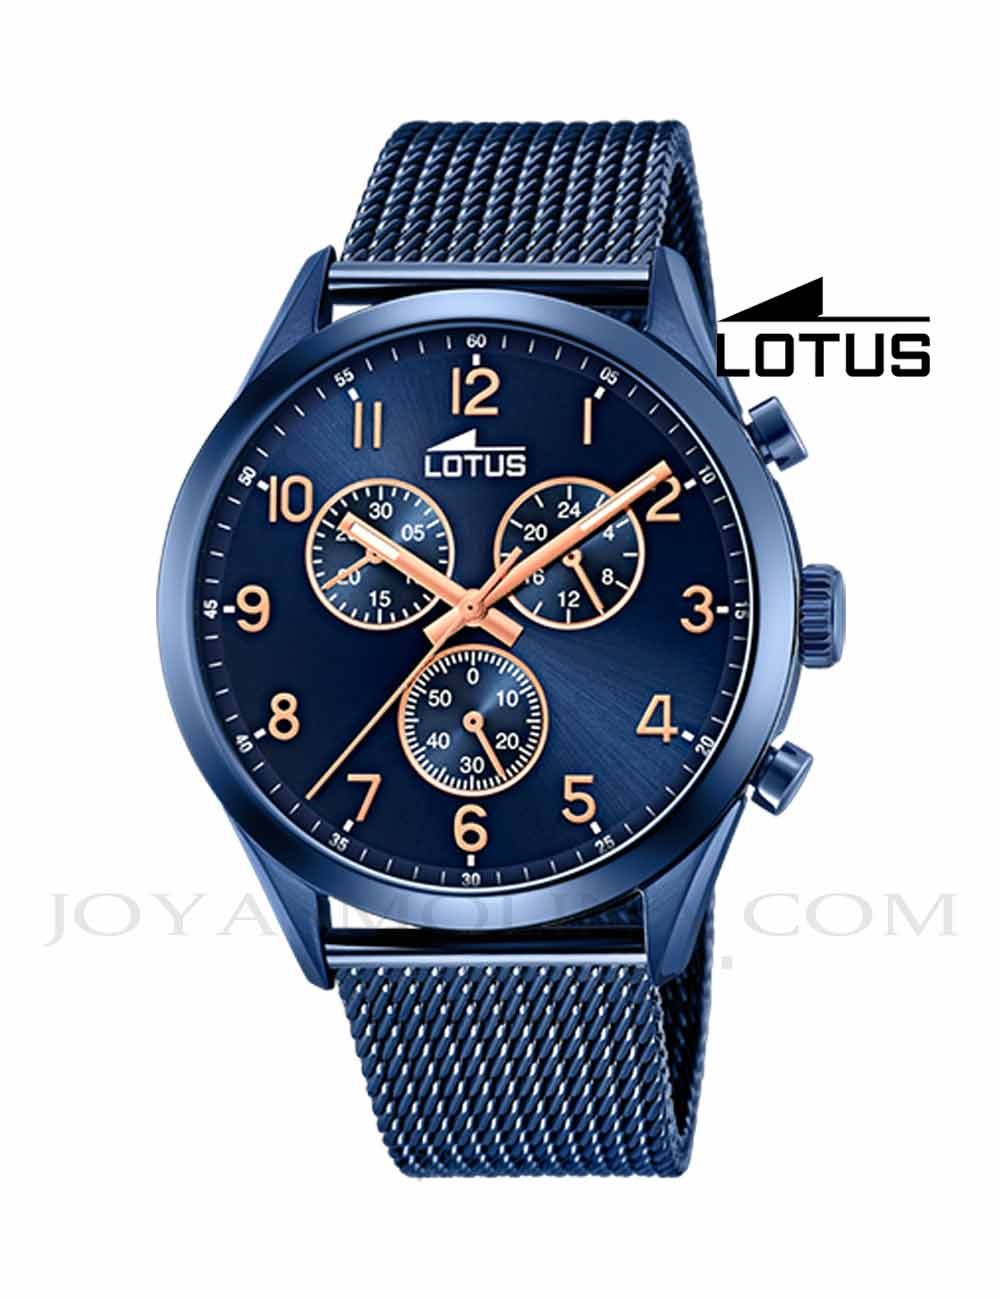 Reloj Lotus Hombre Correa Piel Azul Crono Color Deportivo 18588/2